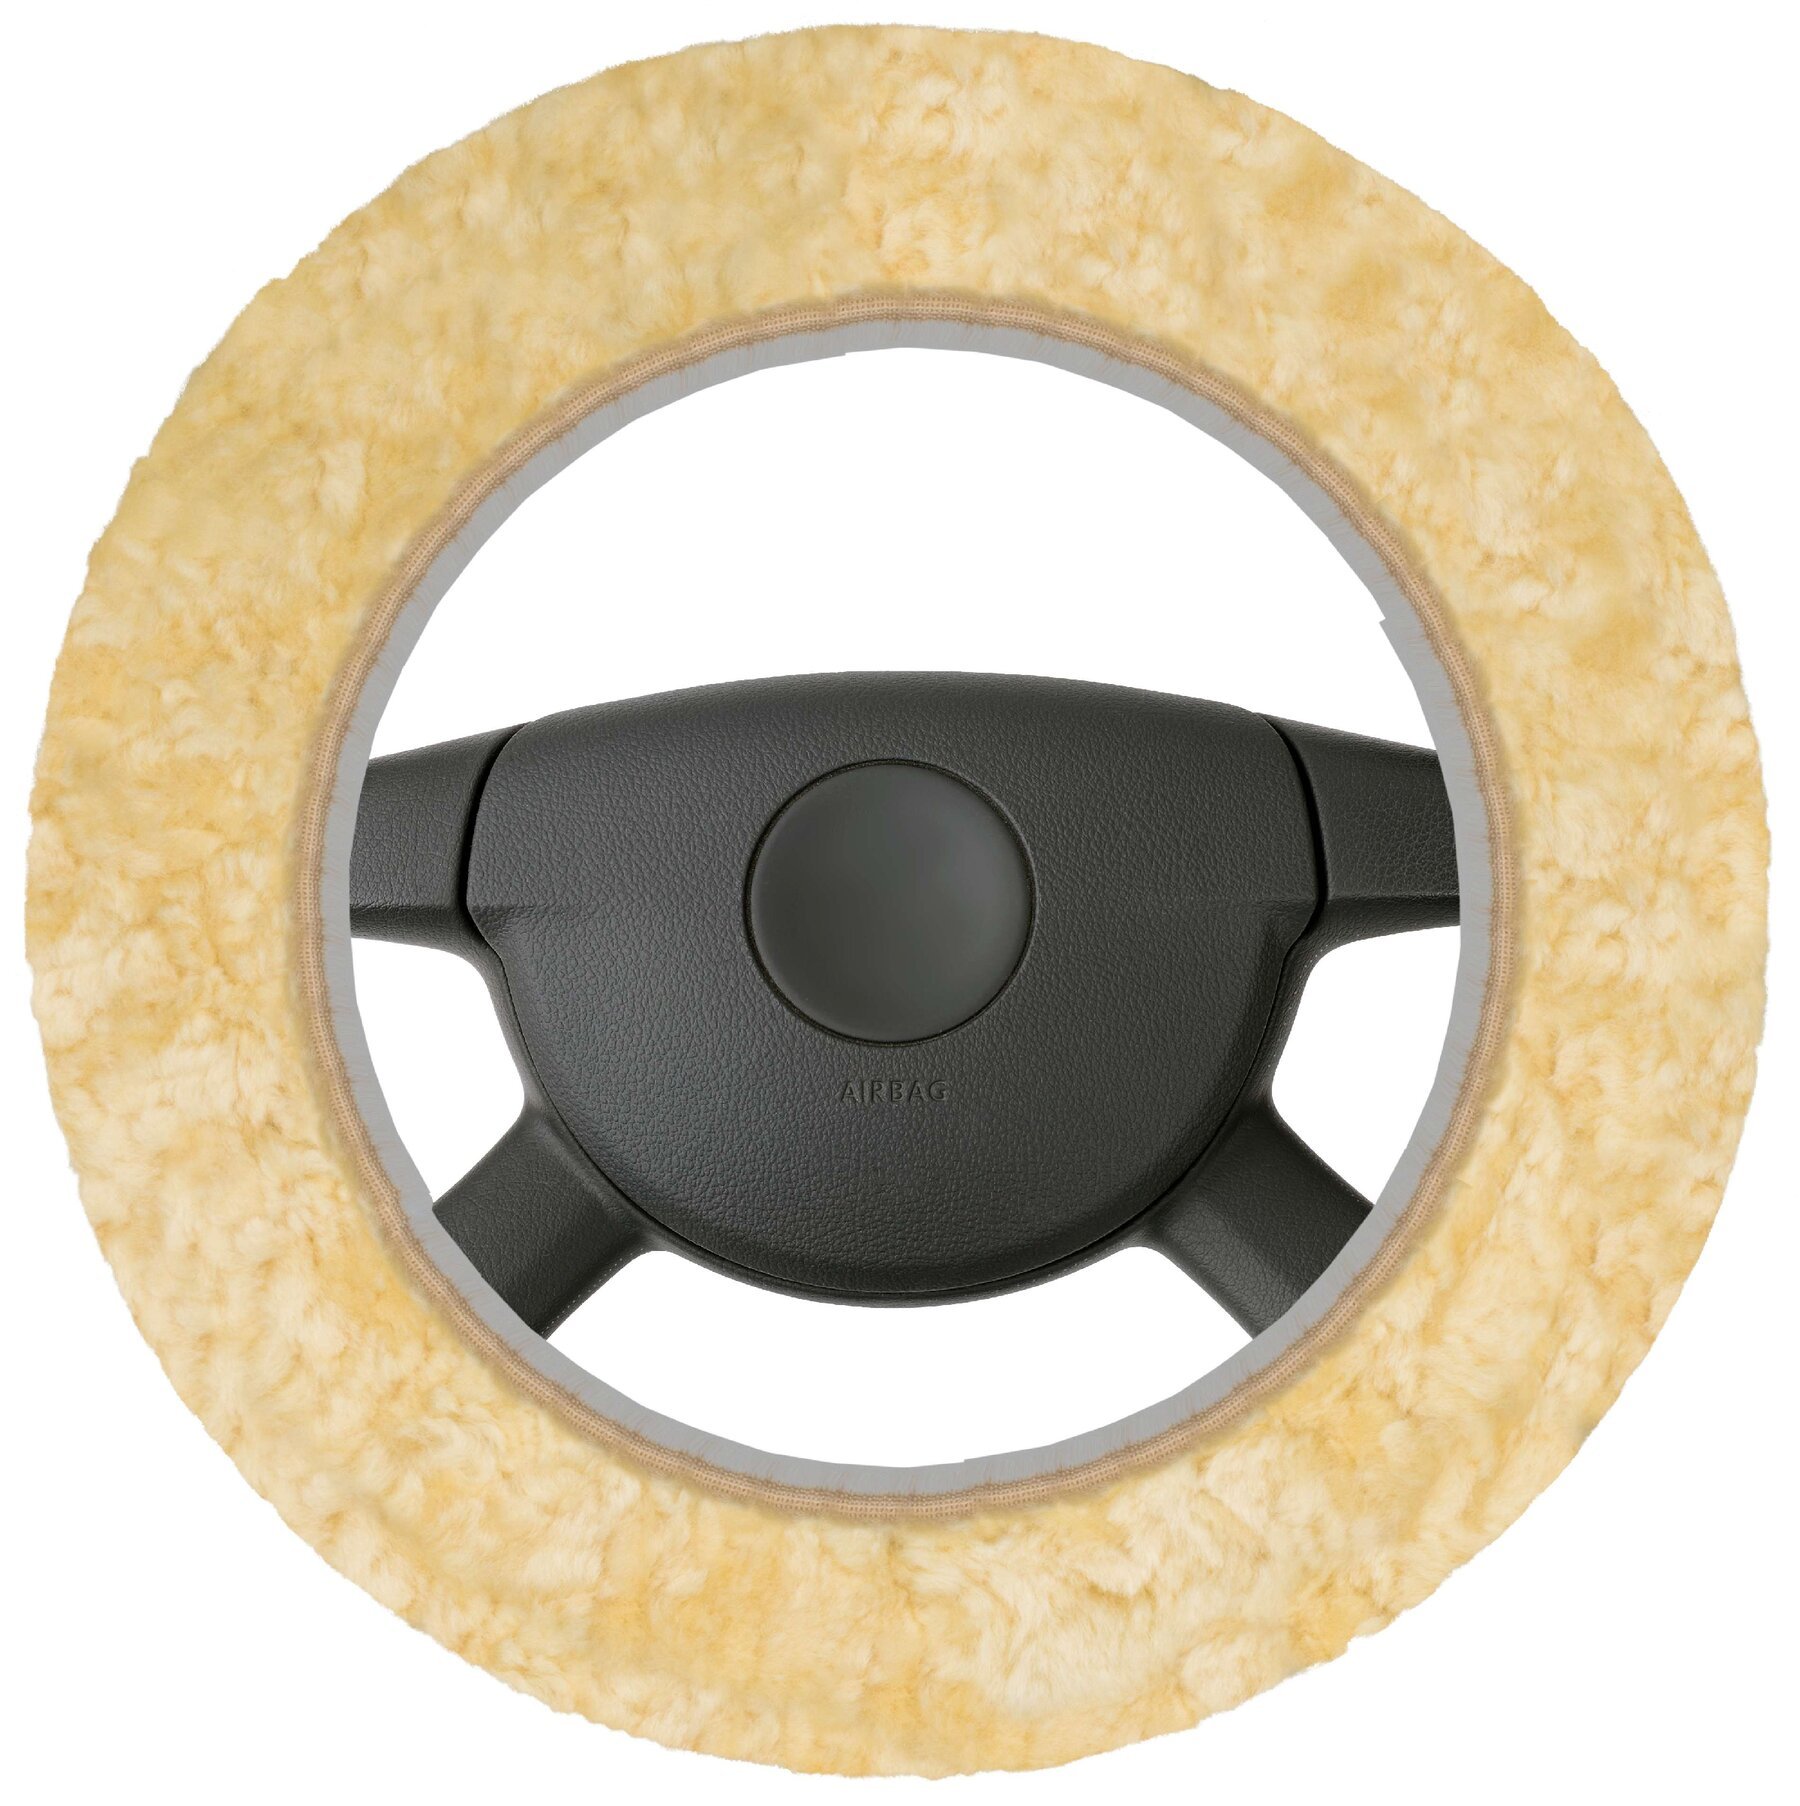 Lambskin steering wheel cover - Steering wheel cover in beige